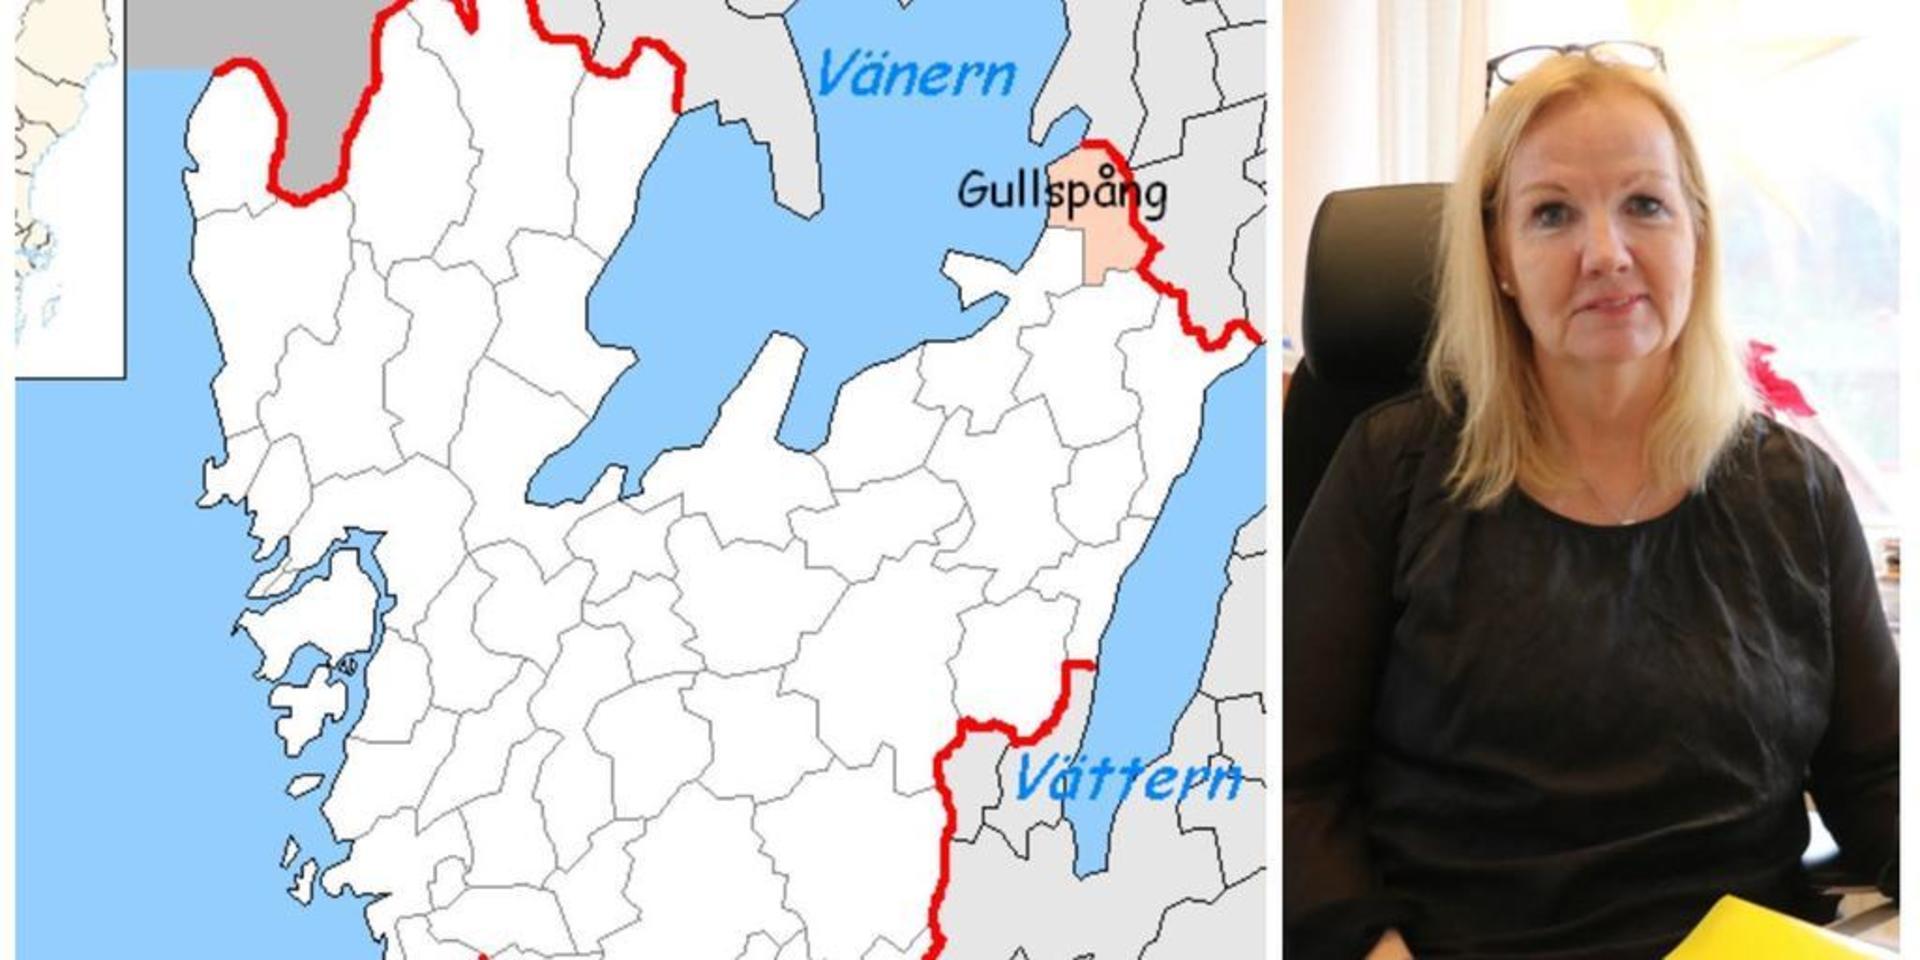 Orust kommun ger bort hälften av sina tilldelade nyanlända till Gullspång nästa år. En bra fördelning menar kommunalrådet Catharina Bråkenhielm (S).